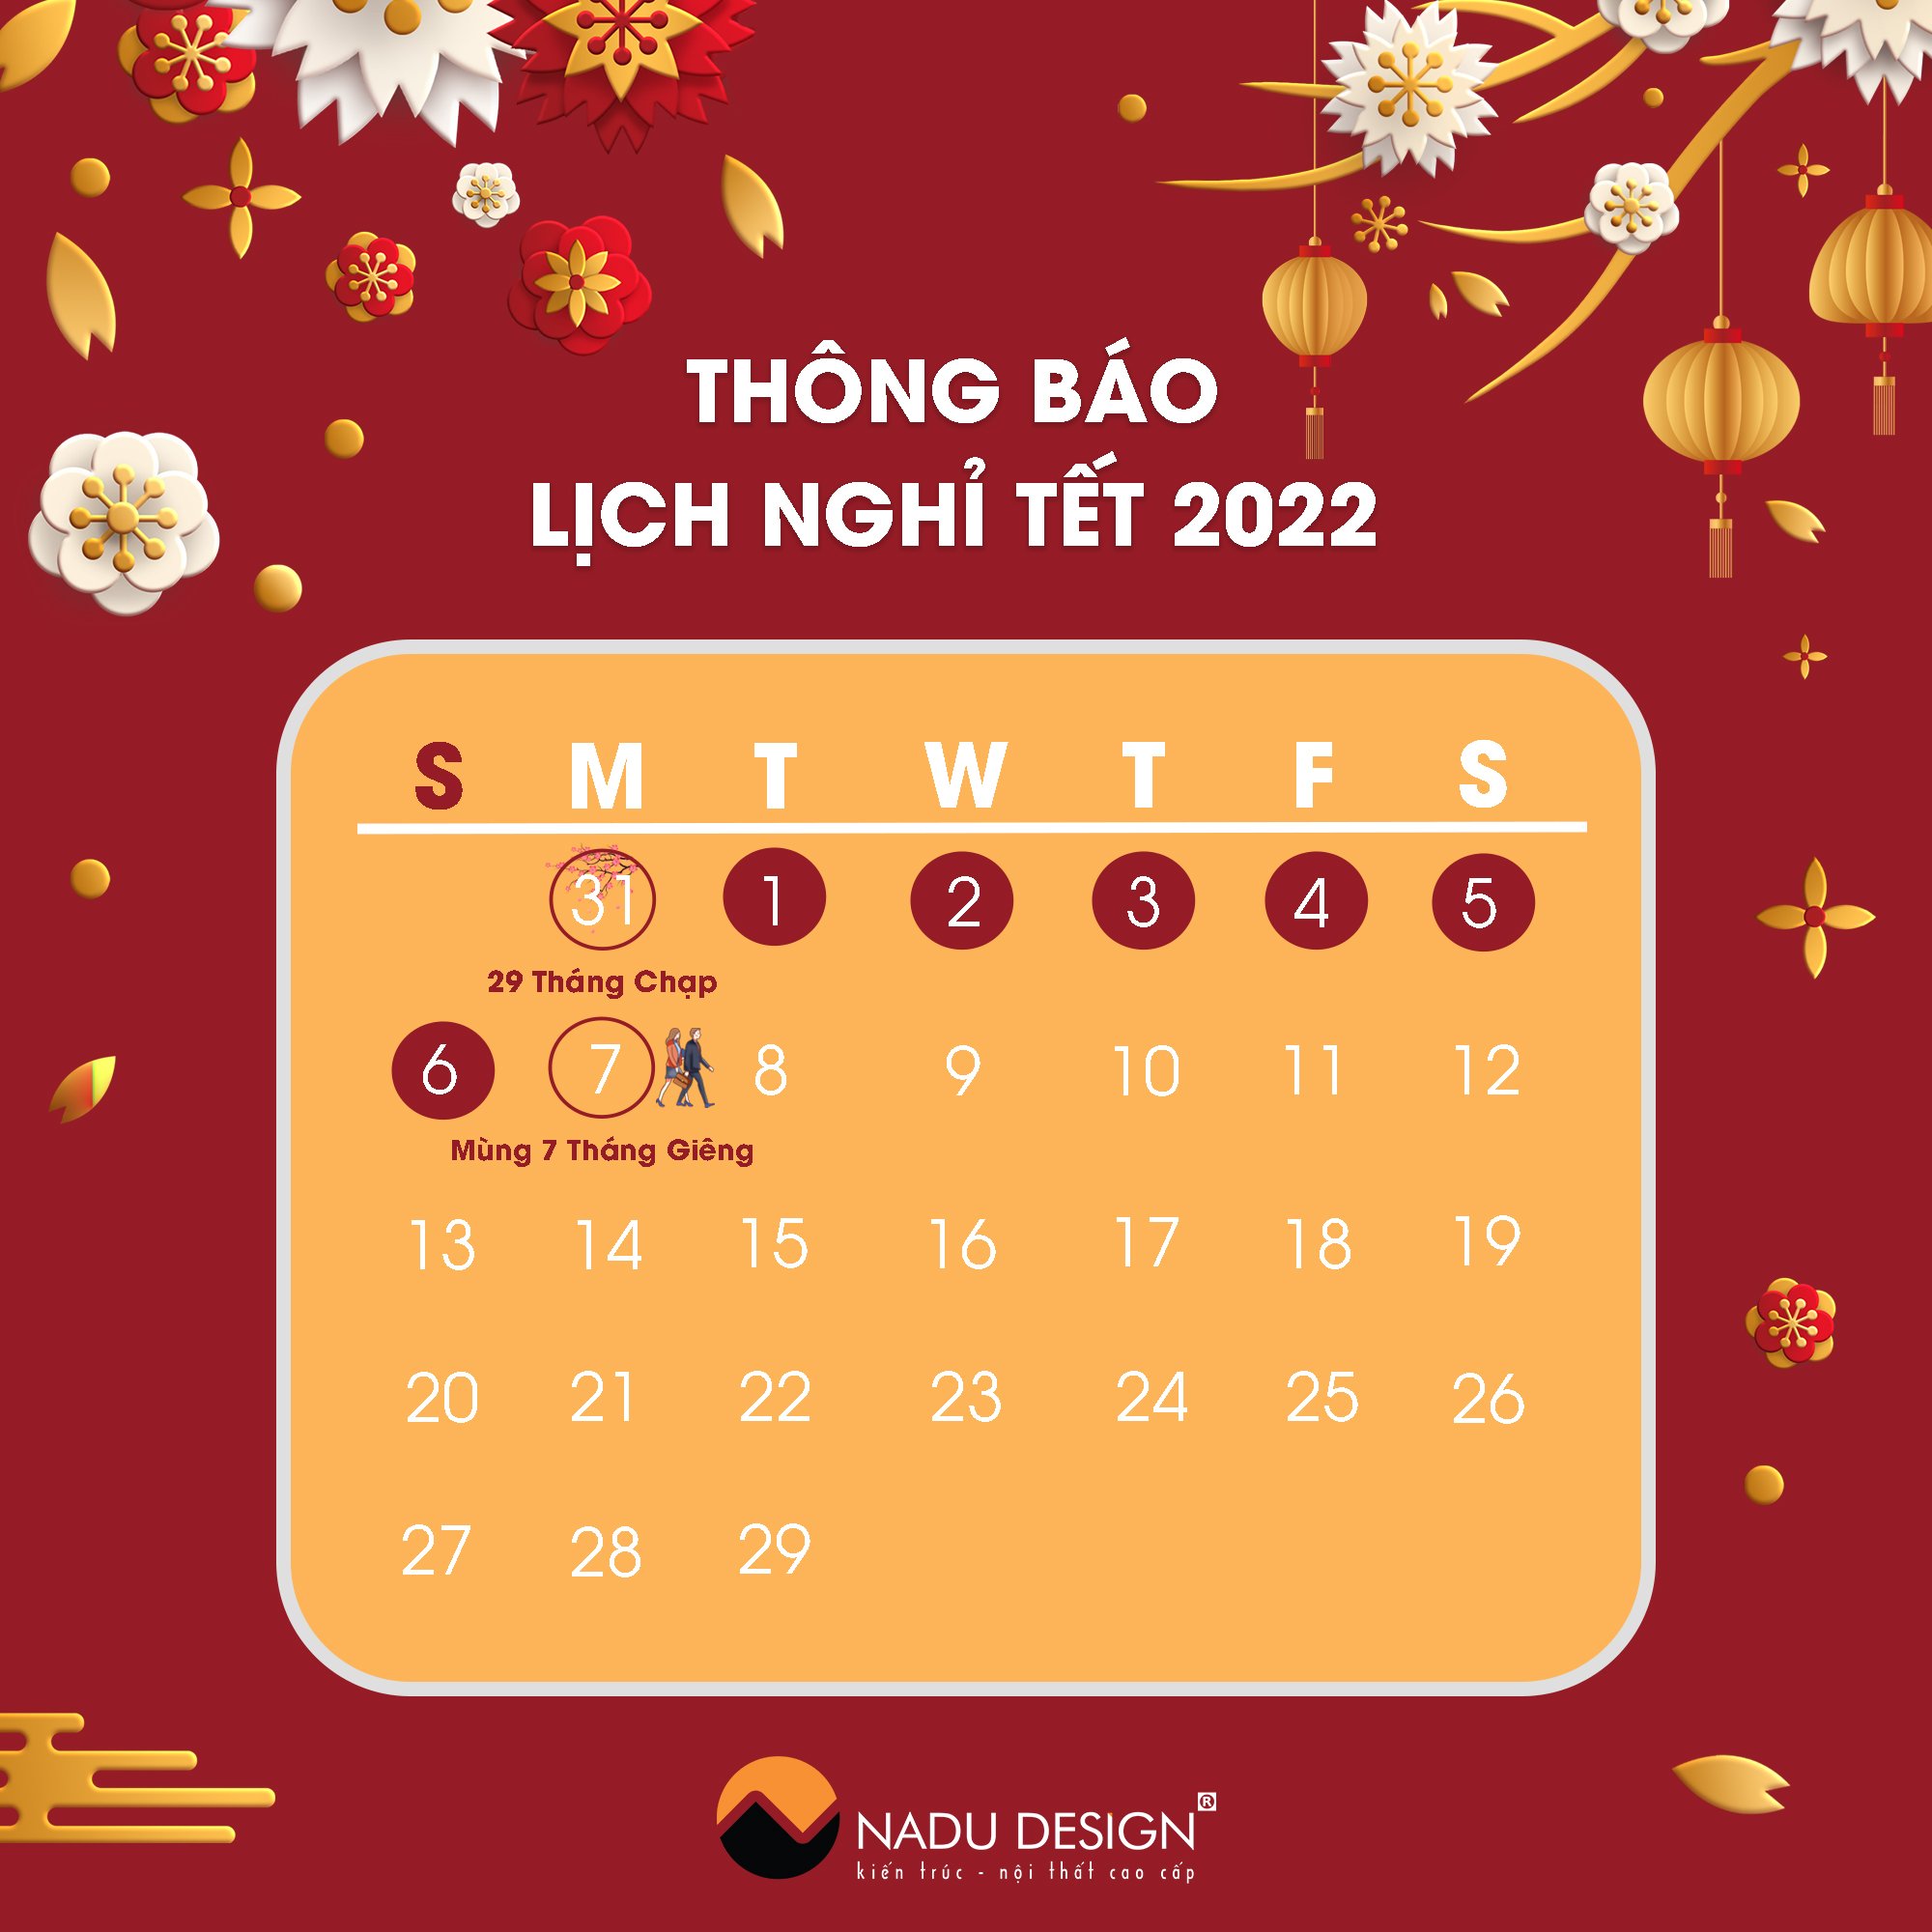 Thông báo lịch nghỉ Tết Nhâm Dần 2022